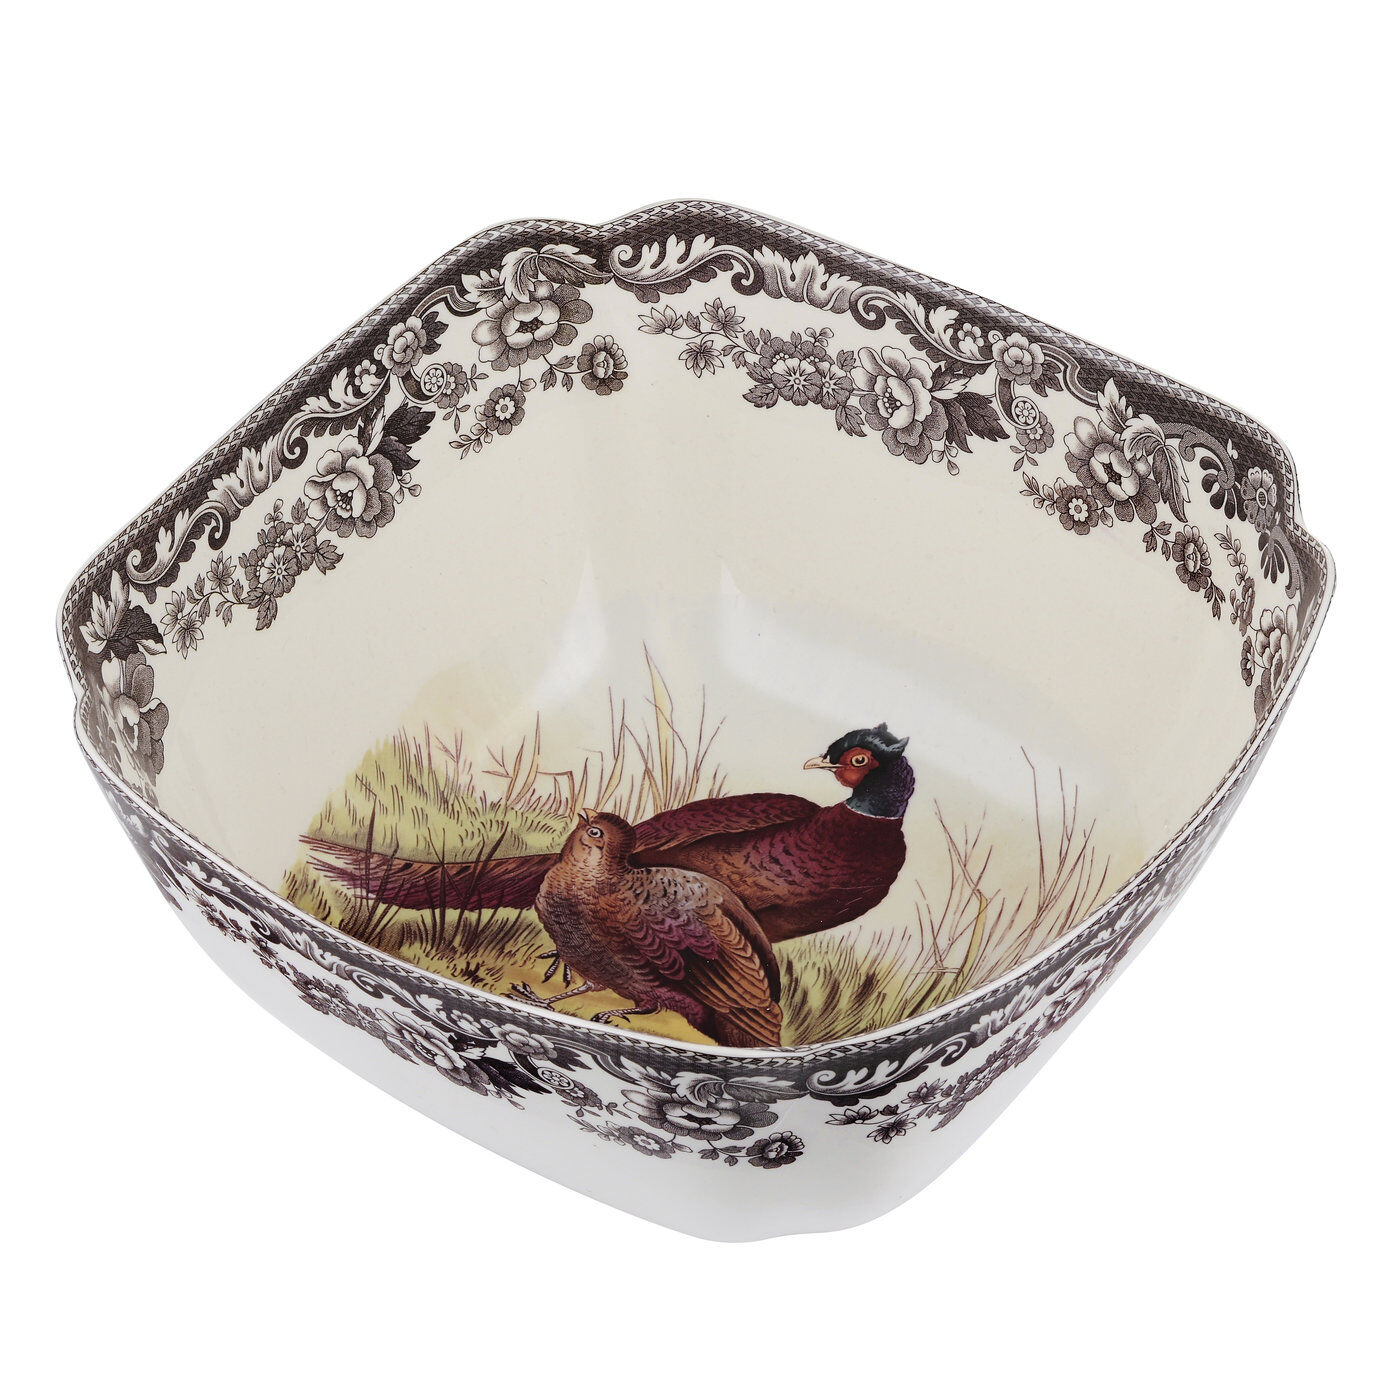 Spode Woodland Nut Bowl with Pheasant Portmeirion USA 1536425